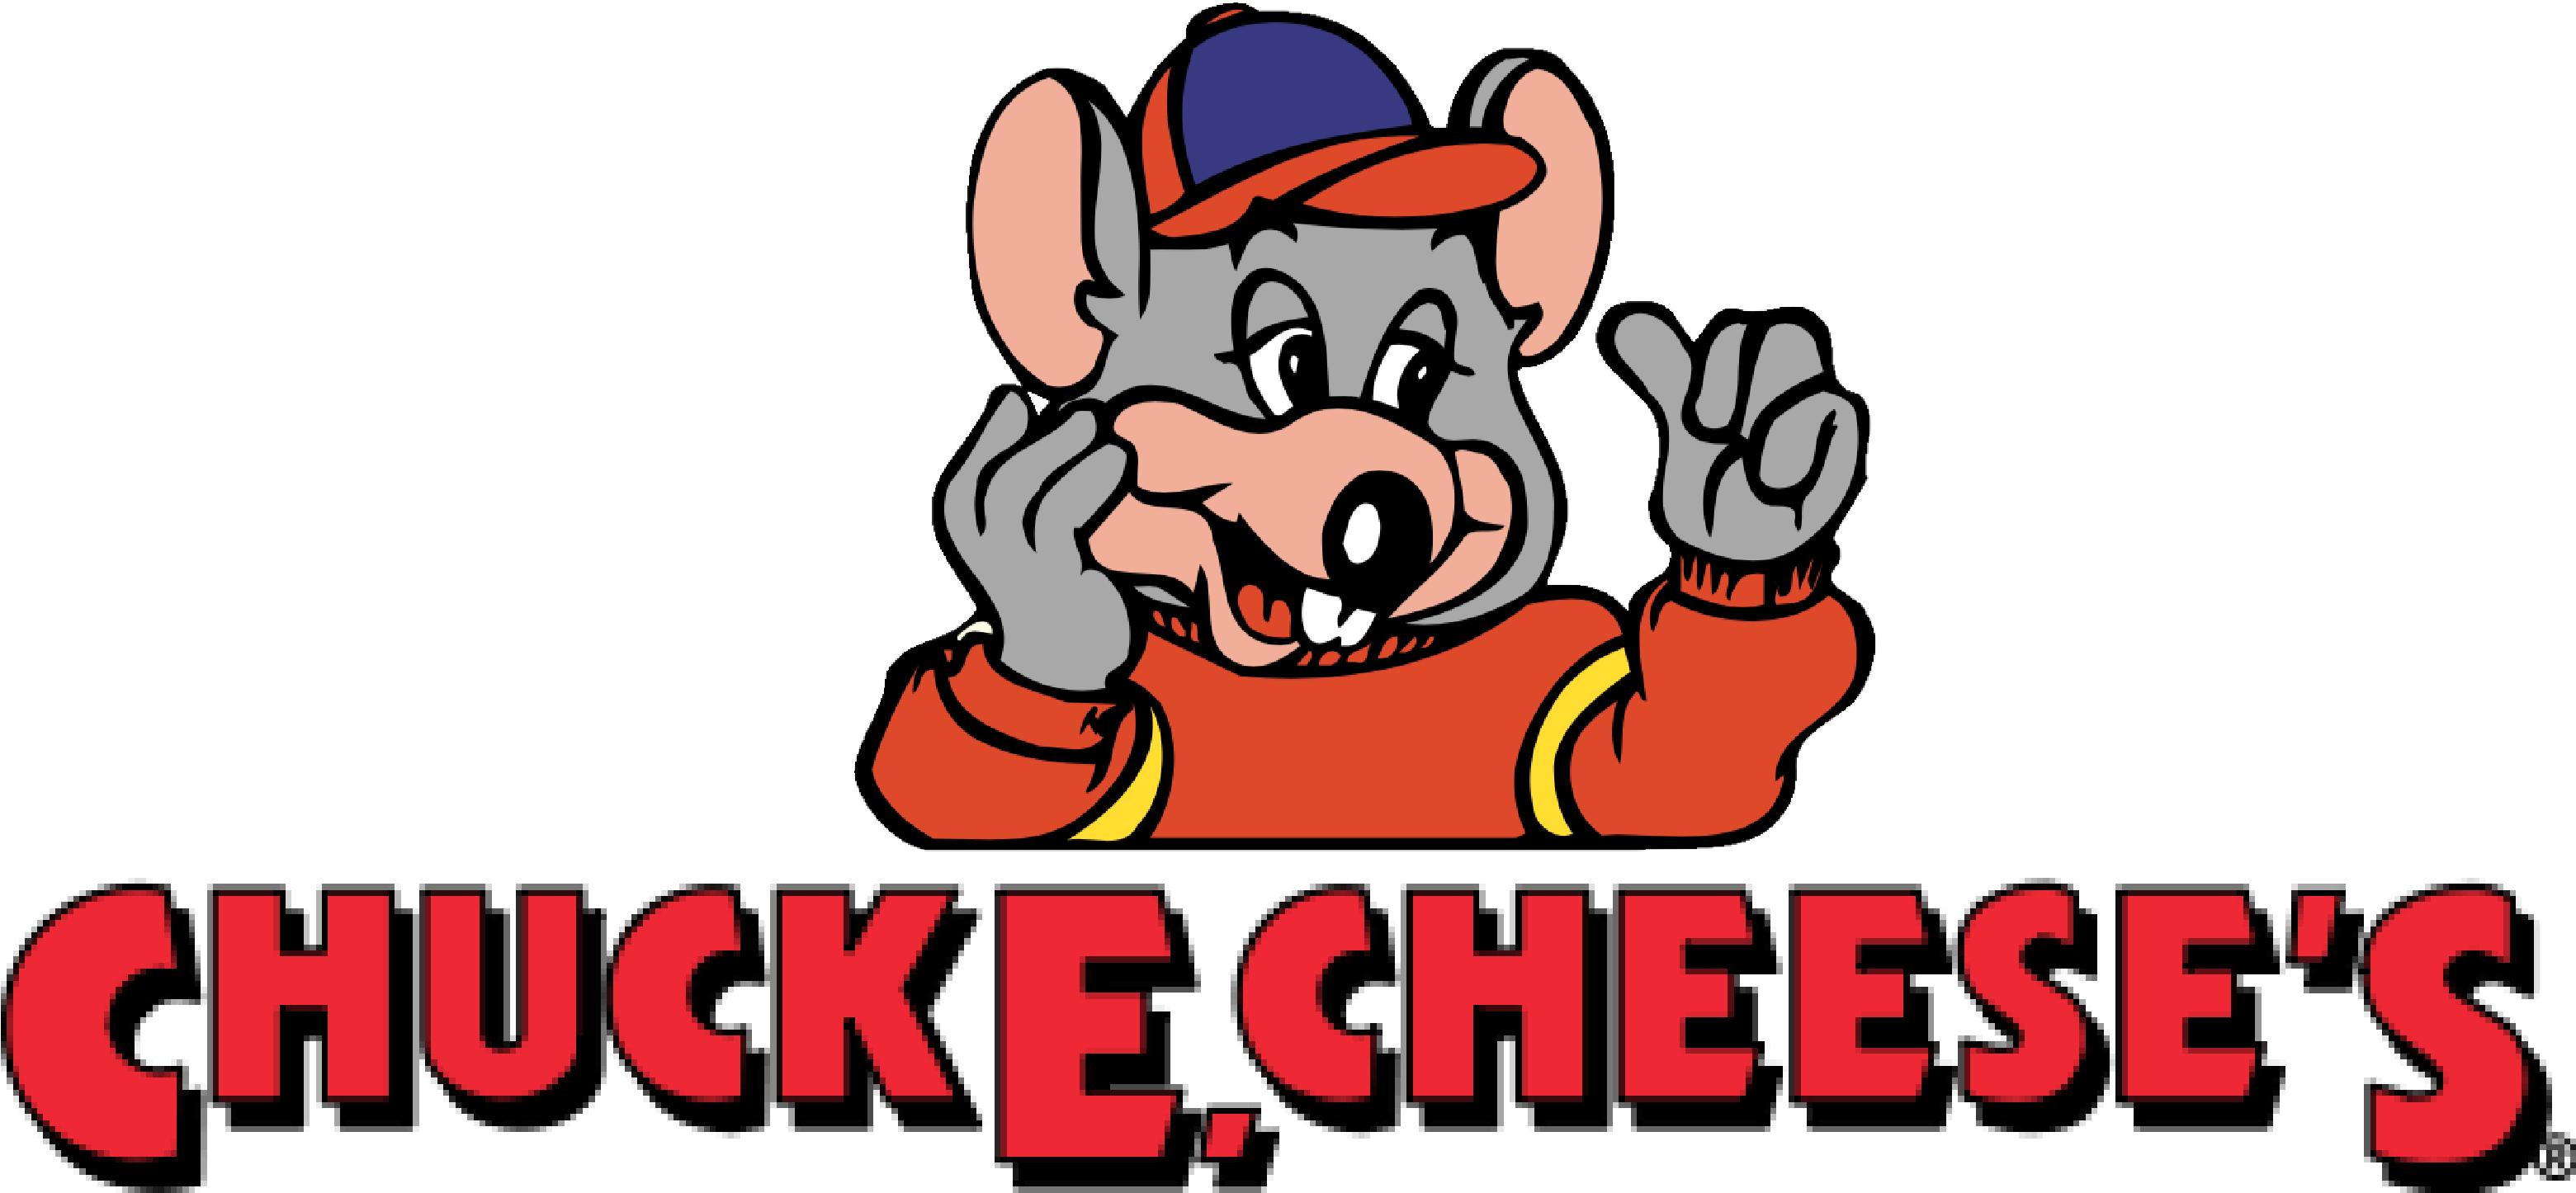 1994-1998 - Chuck E Cheese Logo (3183x1500)